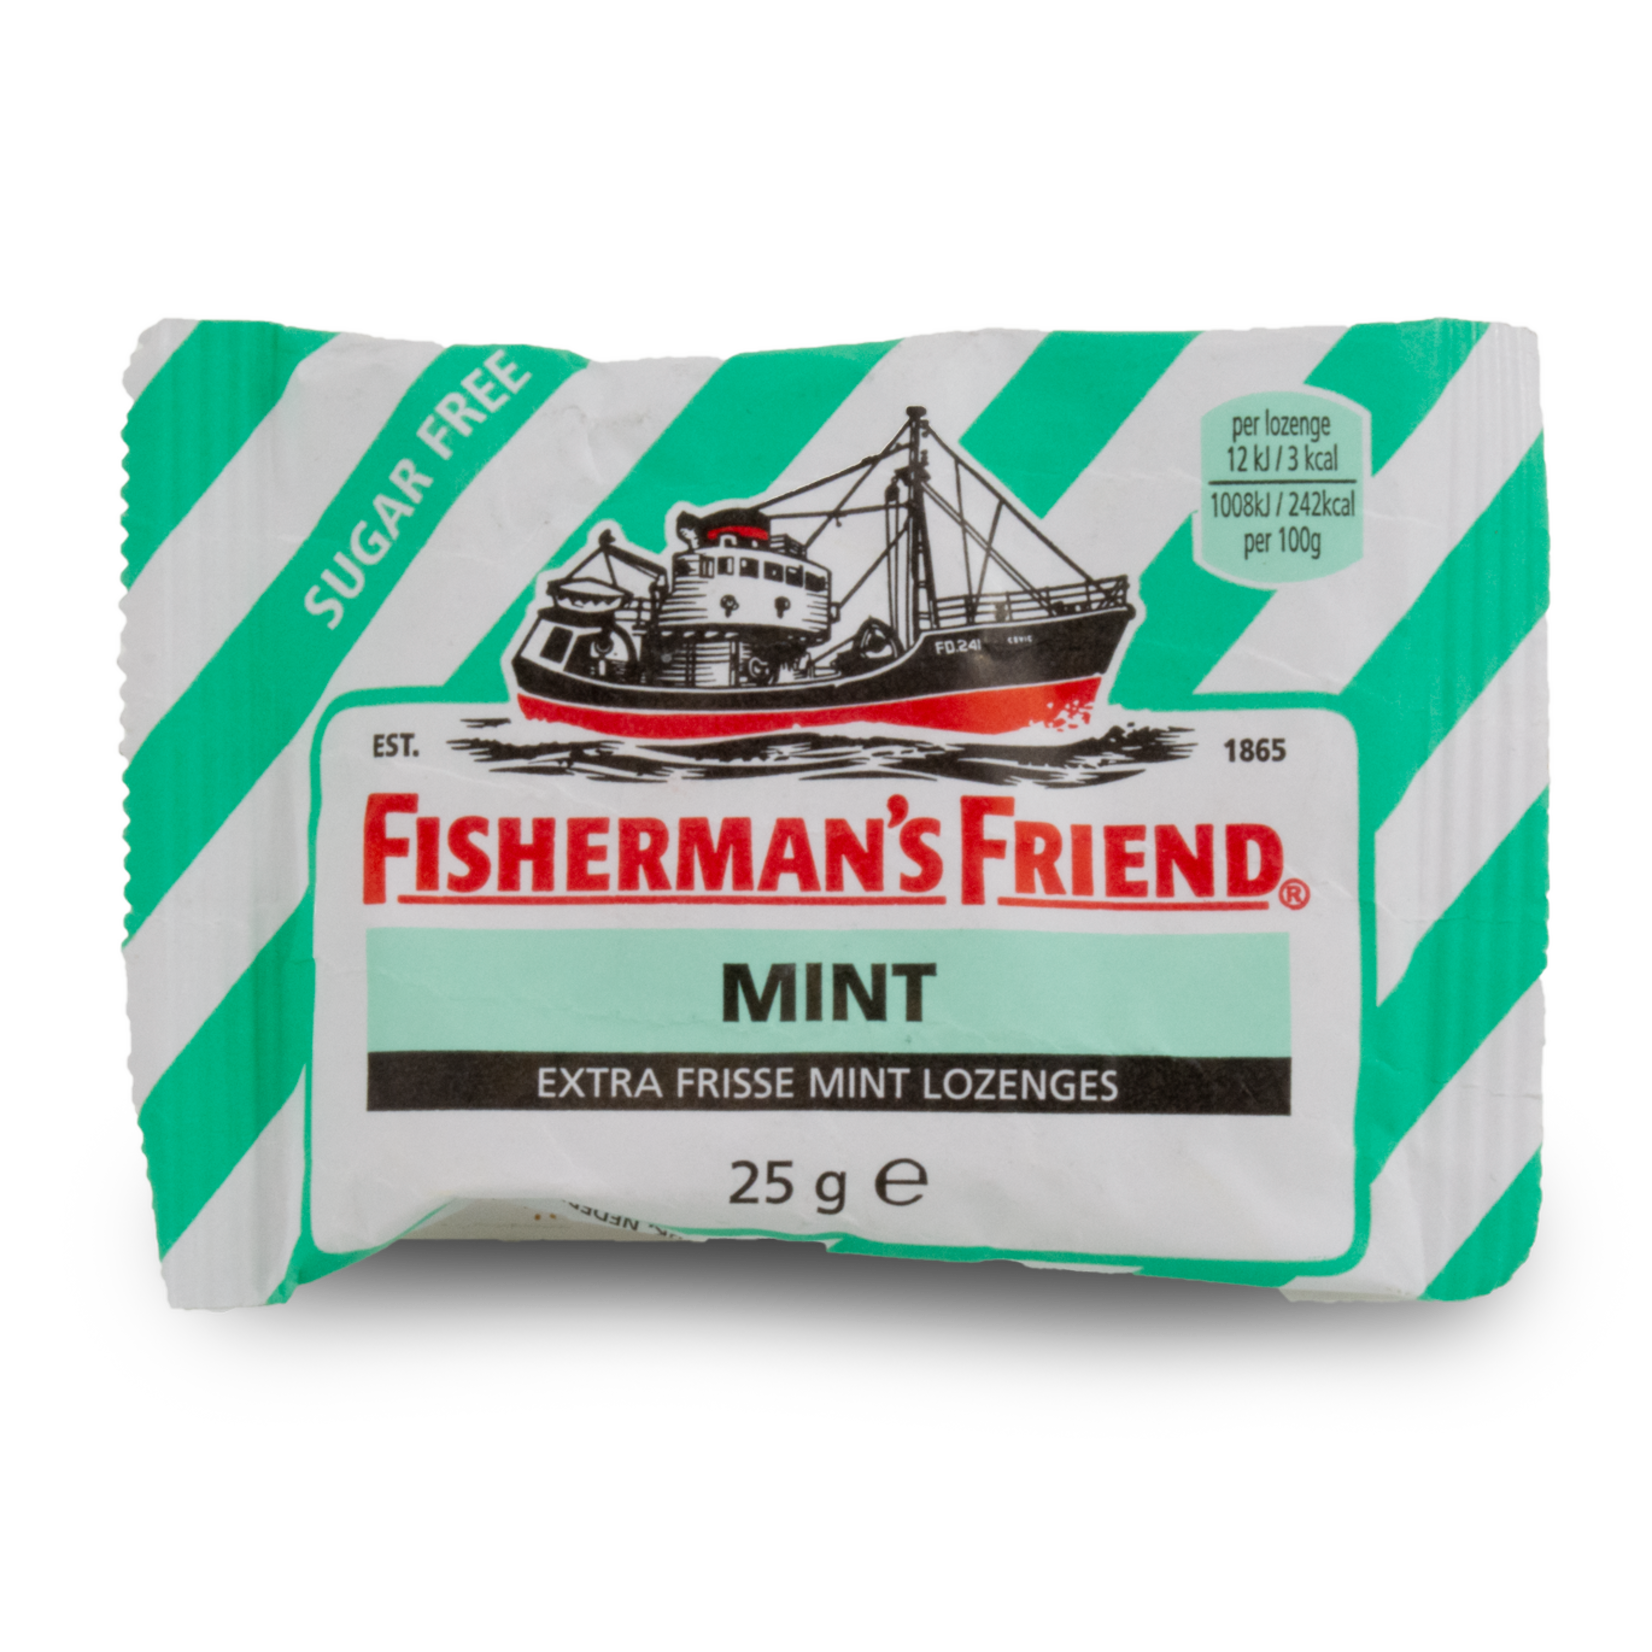 Fisherman's Friend Fisherman's Friend Mint Sugar Free 25g